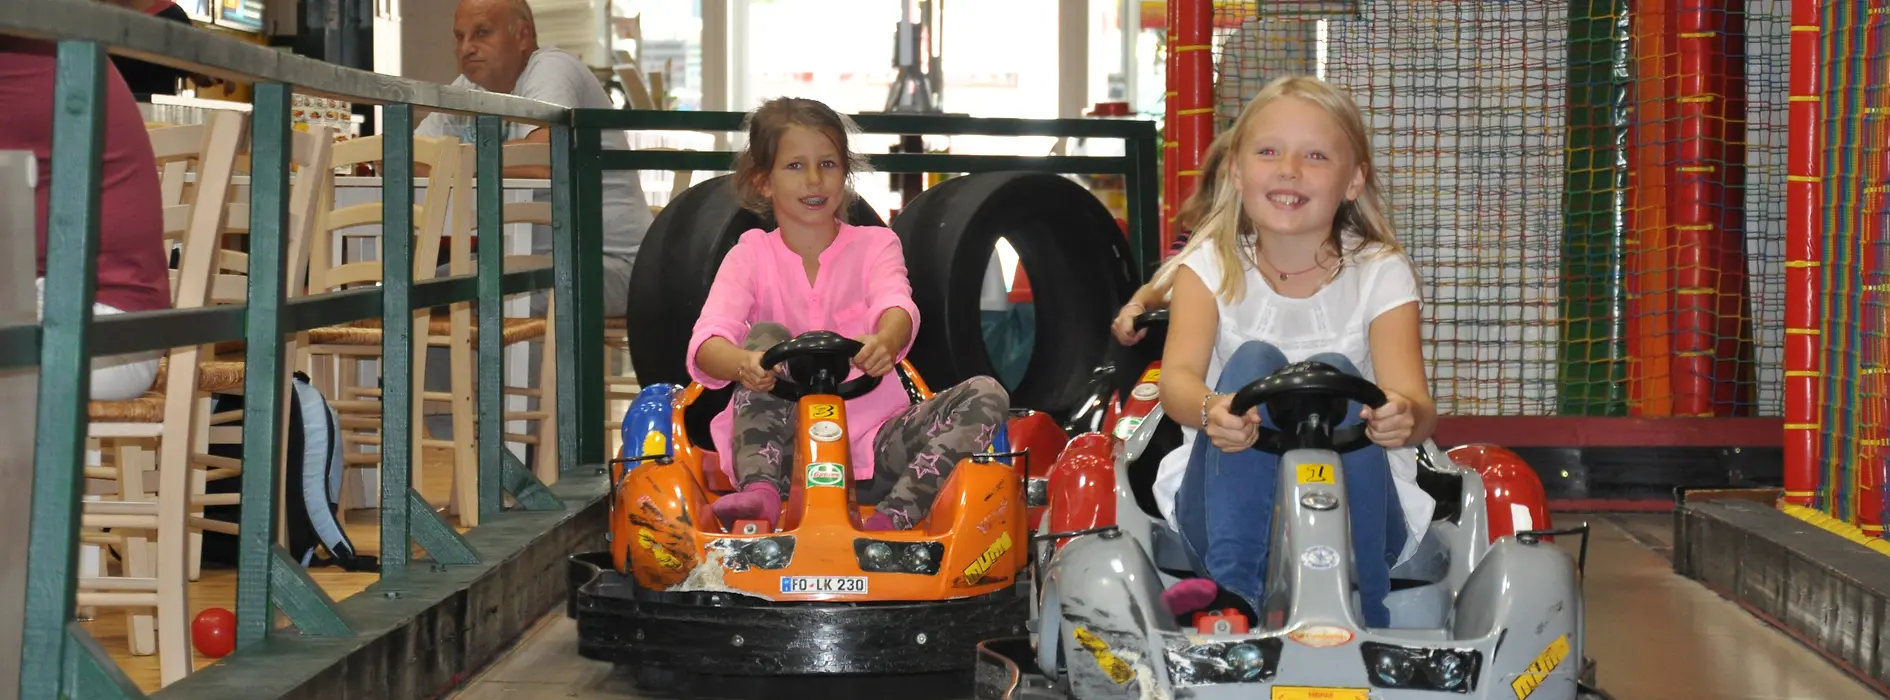 Family Fun Halle, 2 Mädchen am Autodrom-Parcours